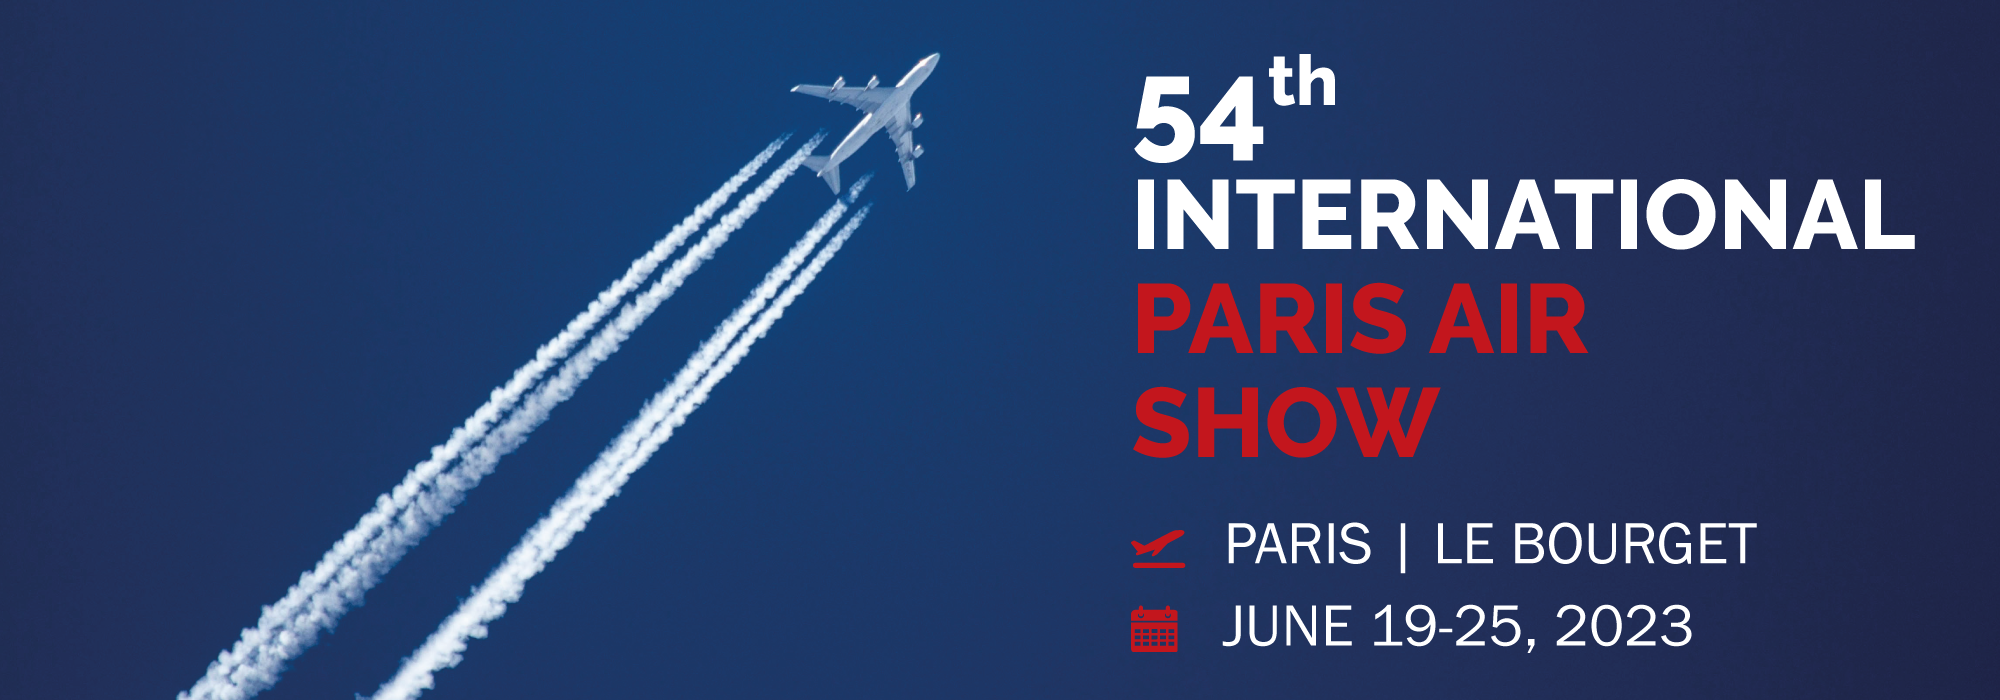 MEET US AT THE PARIS AIR SHOW ! Europe Technologies